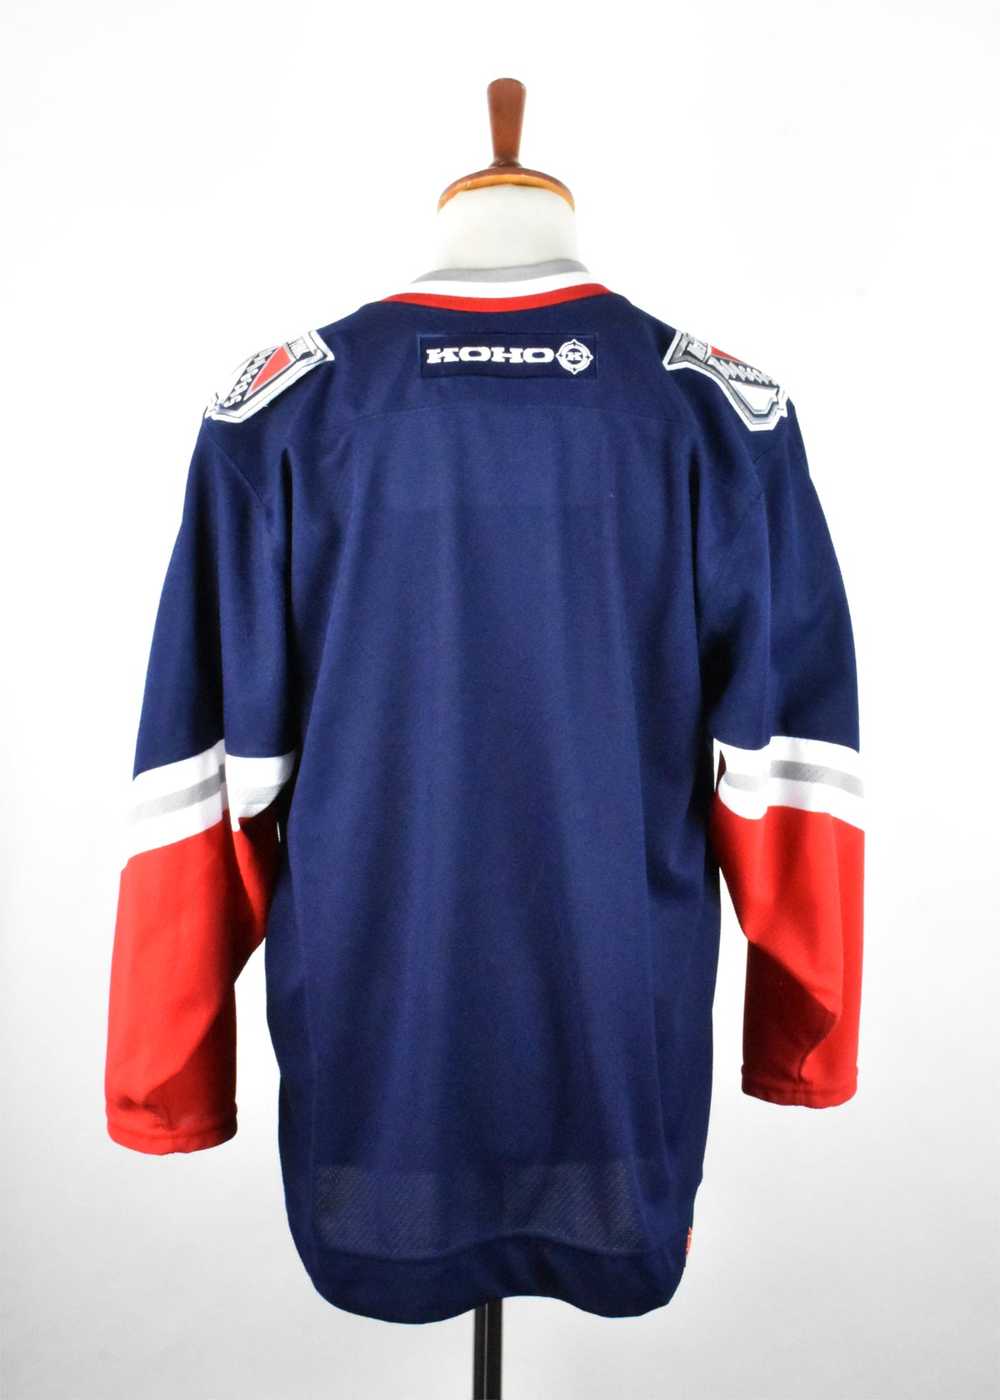 New York Rangers Koho Hockey Jersey, Made in Cana… - image 7